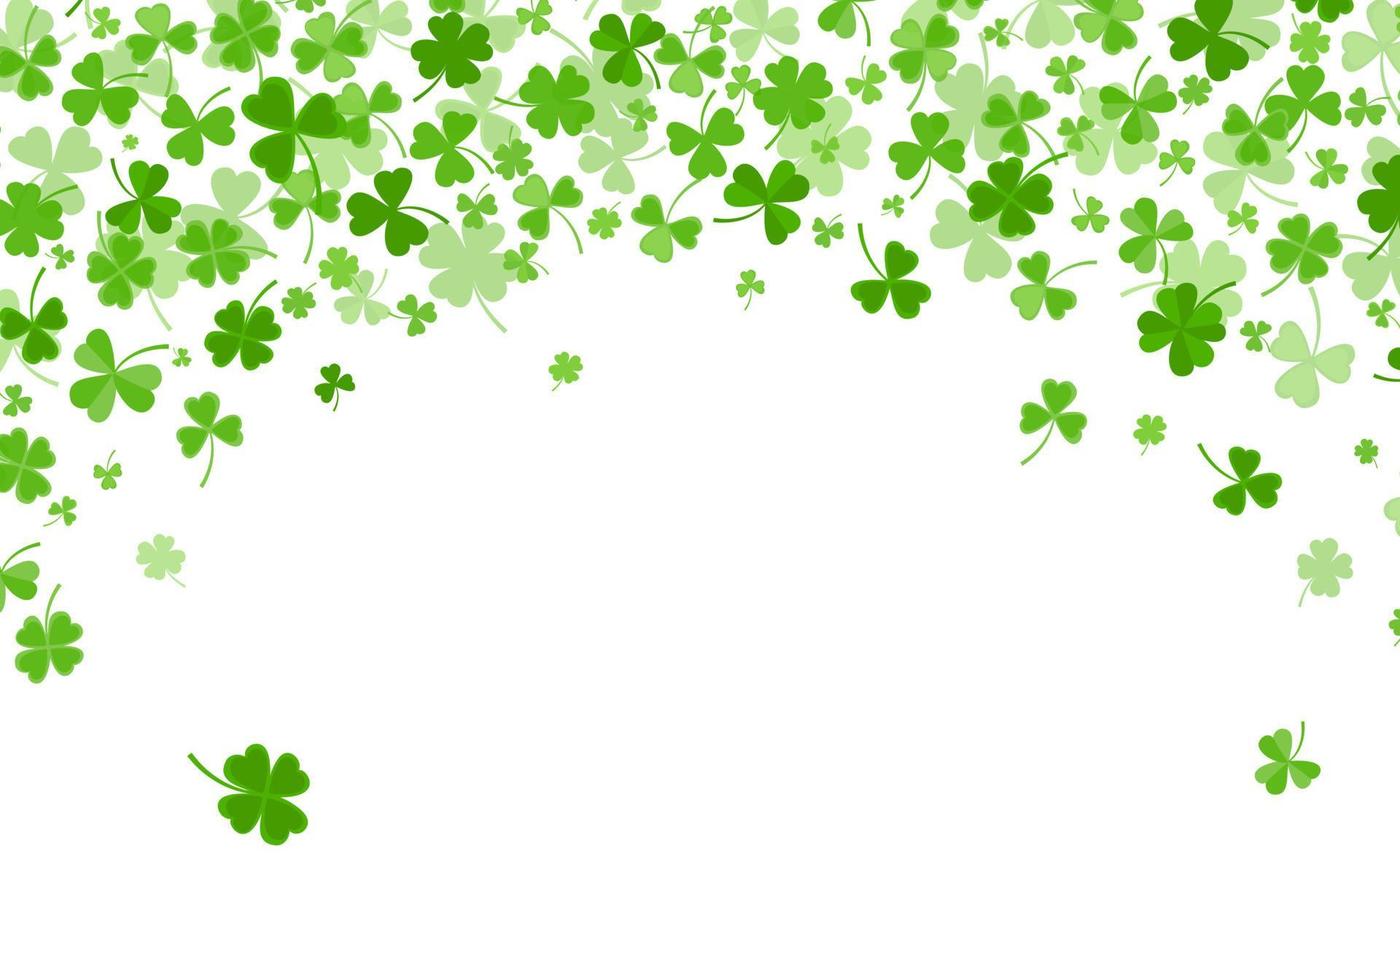 Shamrock or clover leaves flat design green backdrop pattern vector illustration.